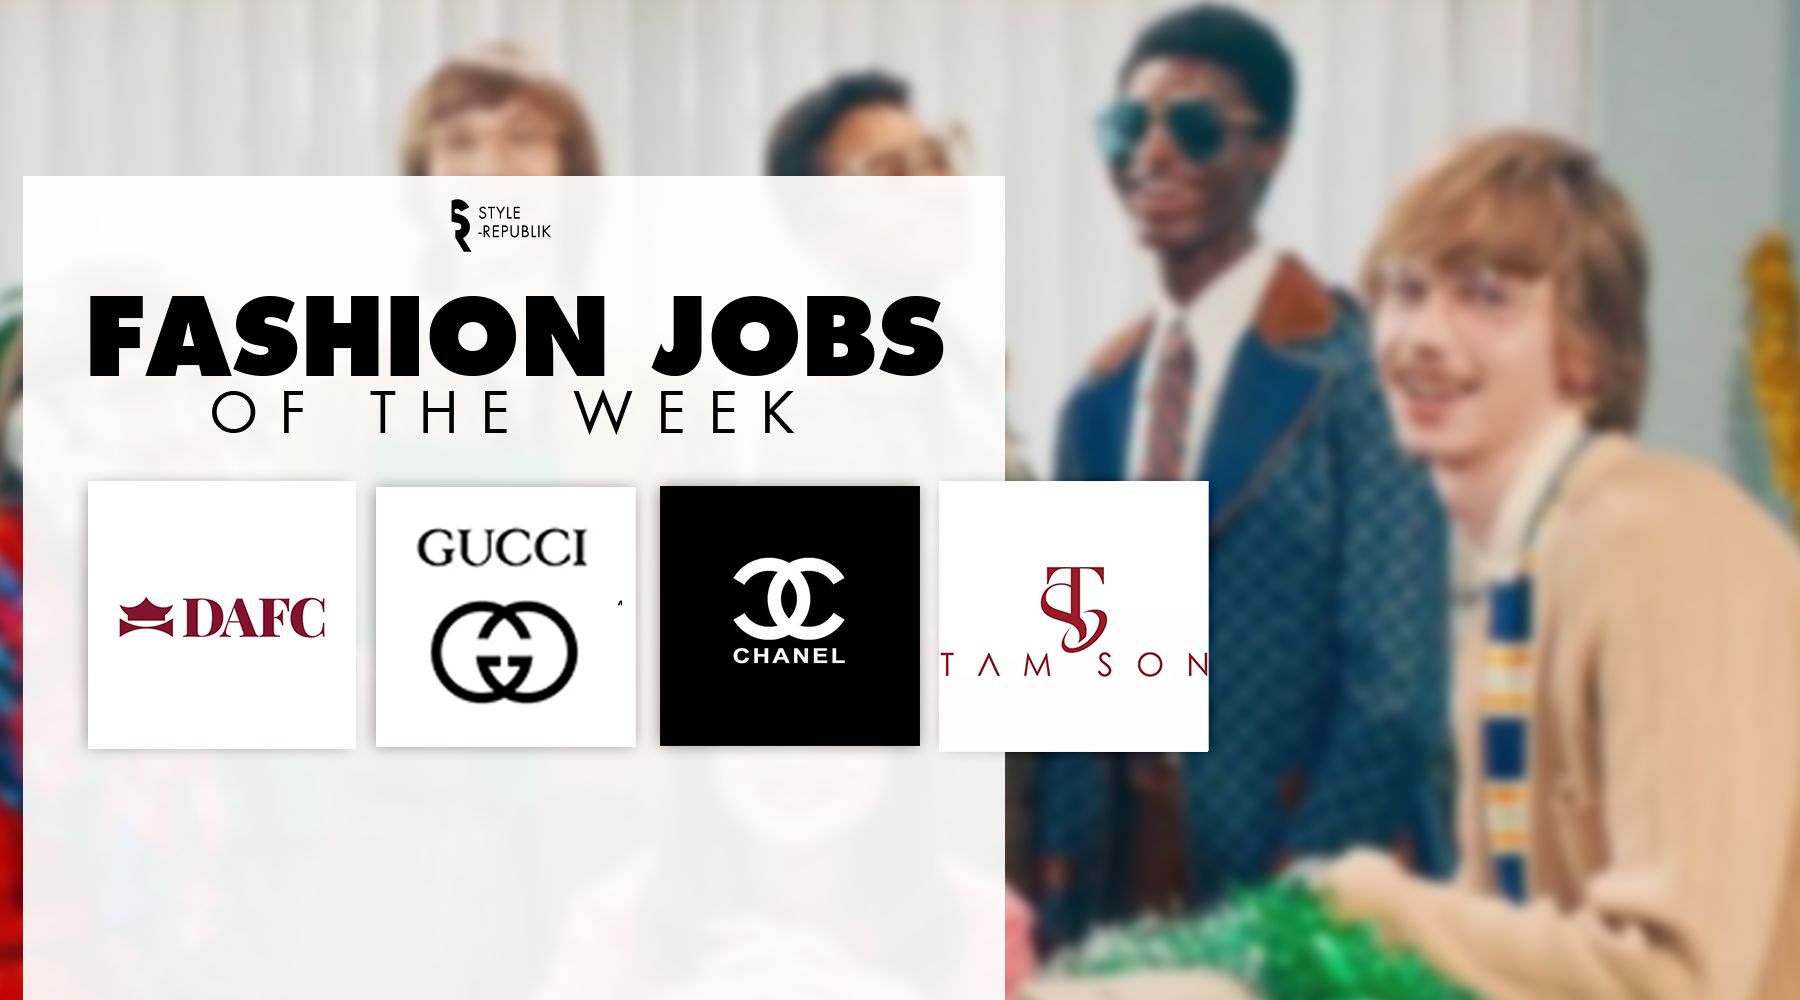 Fashion Jobs of the Week] Việc làm thời trang tại CHANEL, GUCCI, Tam Son,  và DAFC  | Thời Trang, sáng tạo và kinh doanh